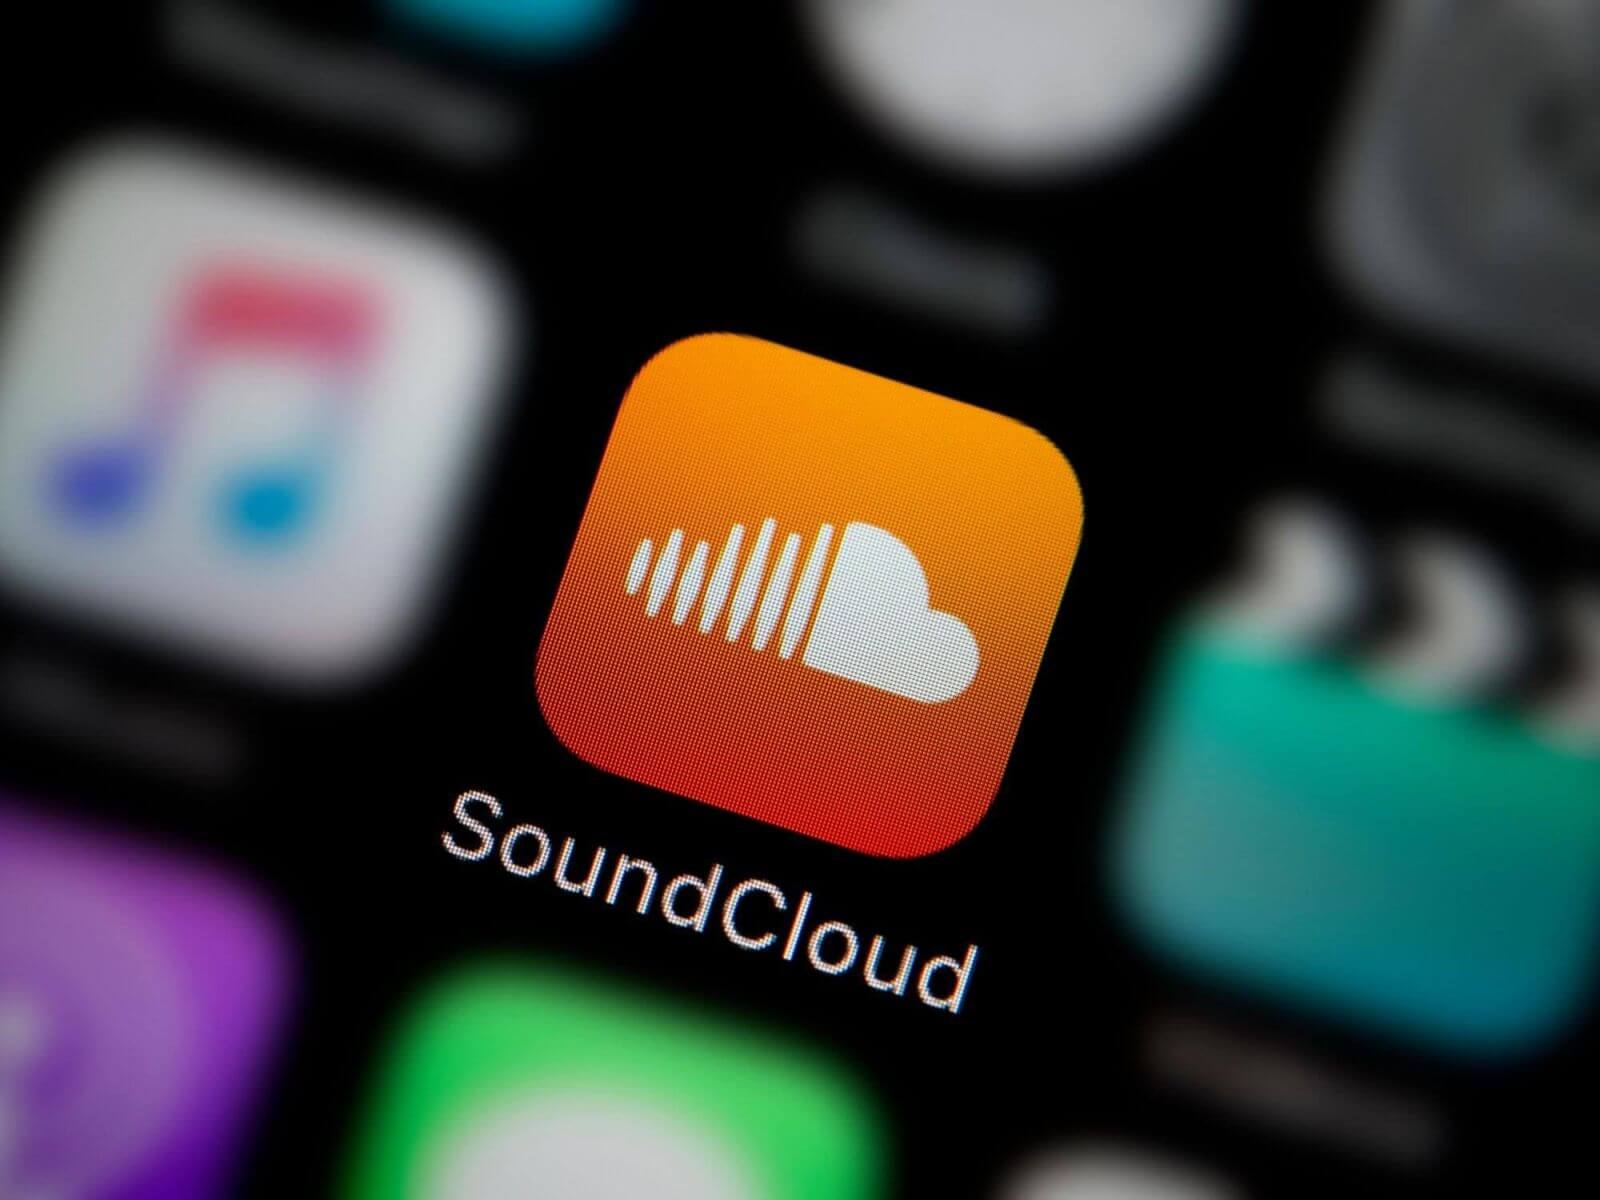 Thay đổi ngôn ngữ trên SoundCloud có lợi gì?